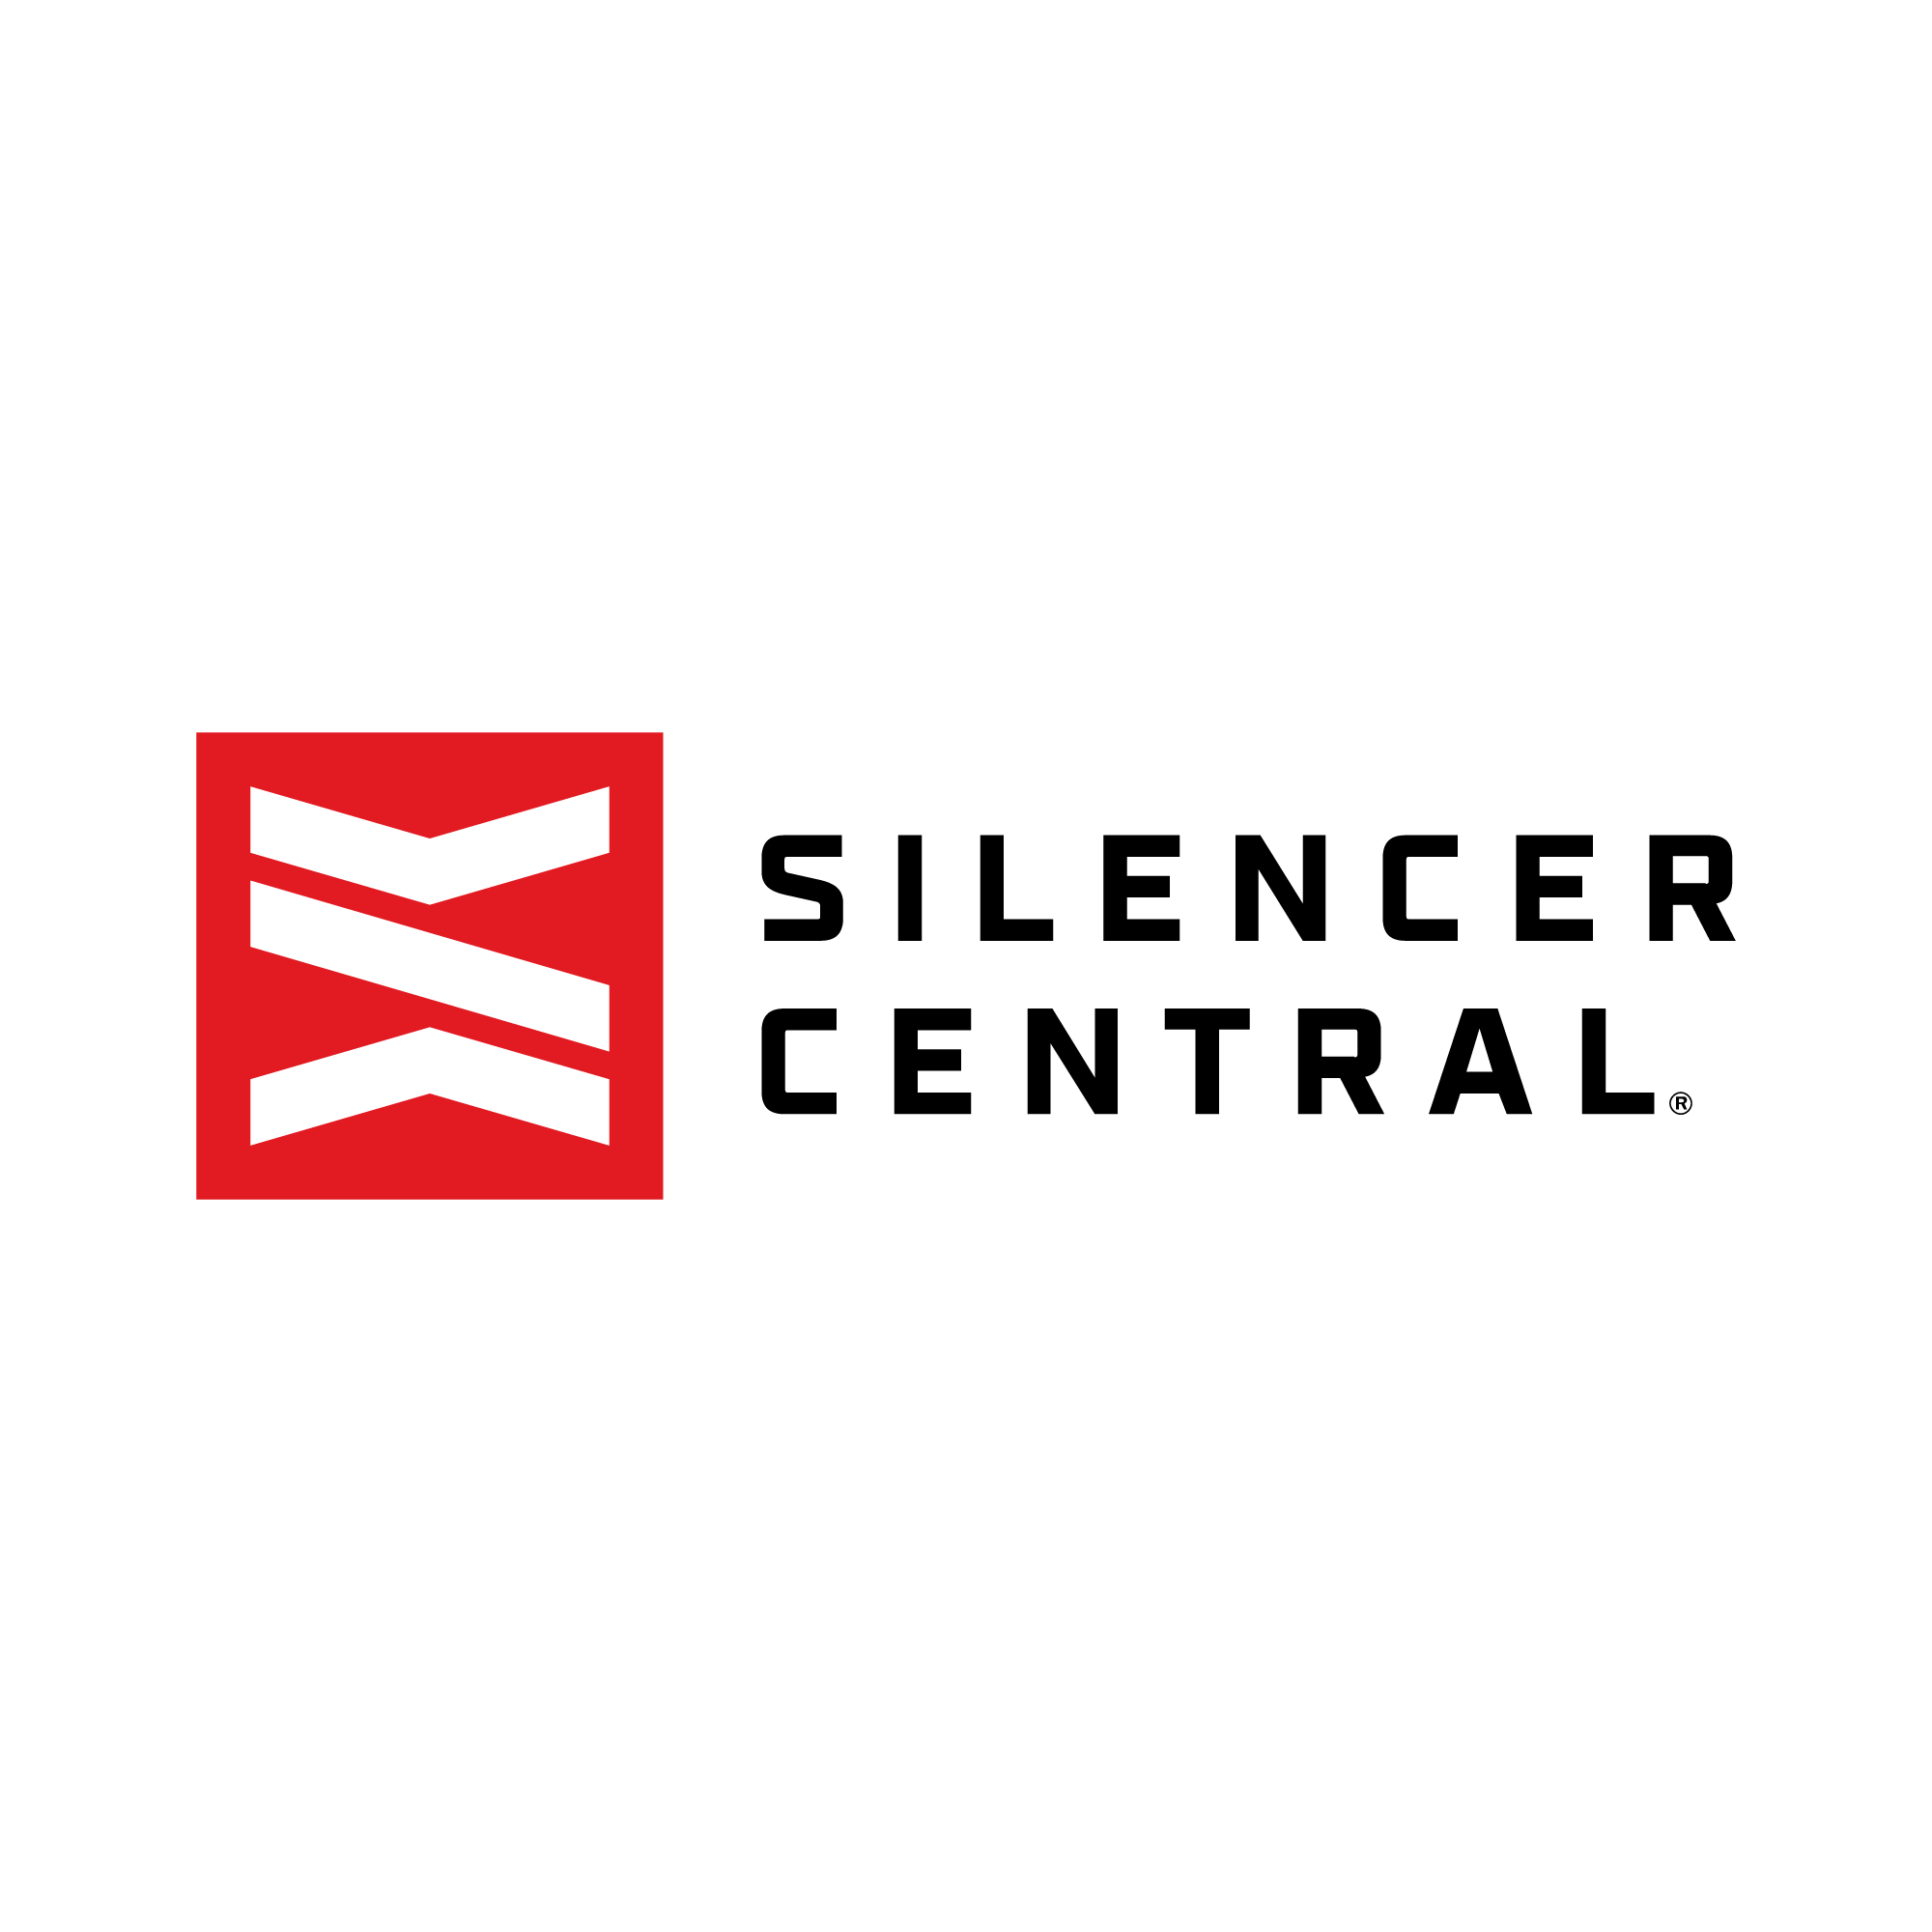 www.silencercentral.com